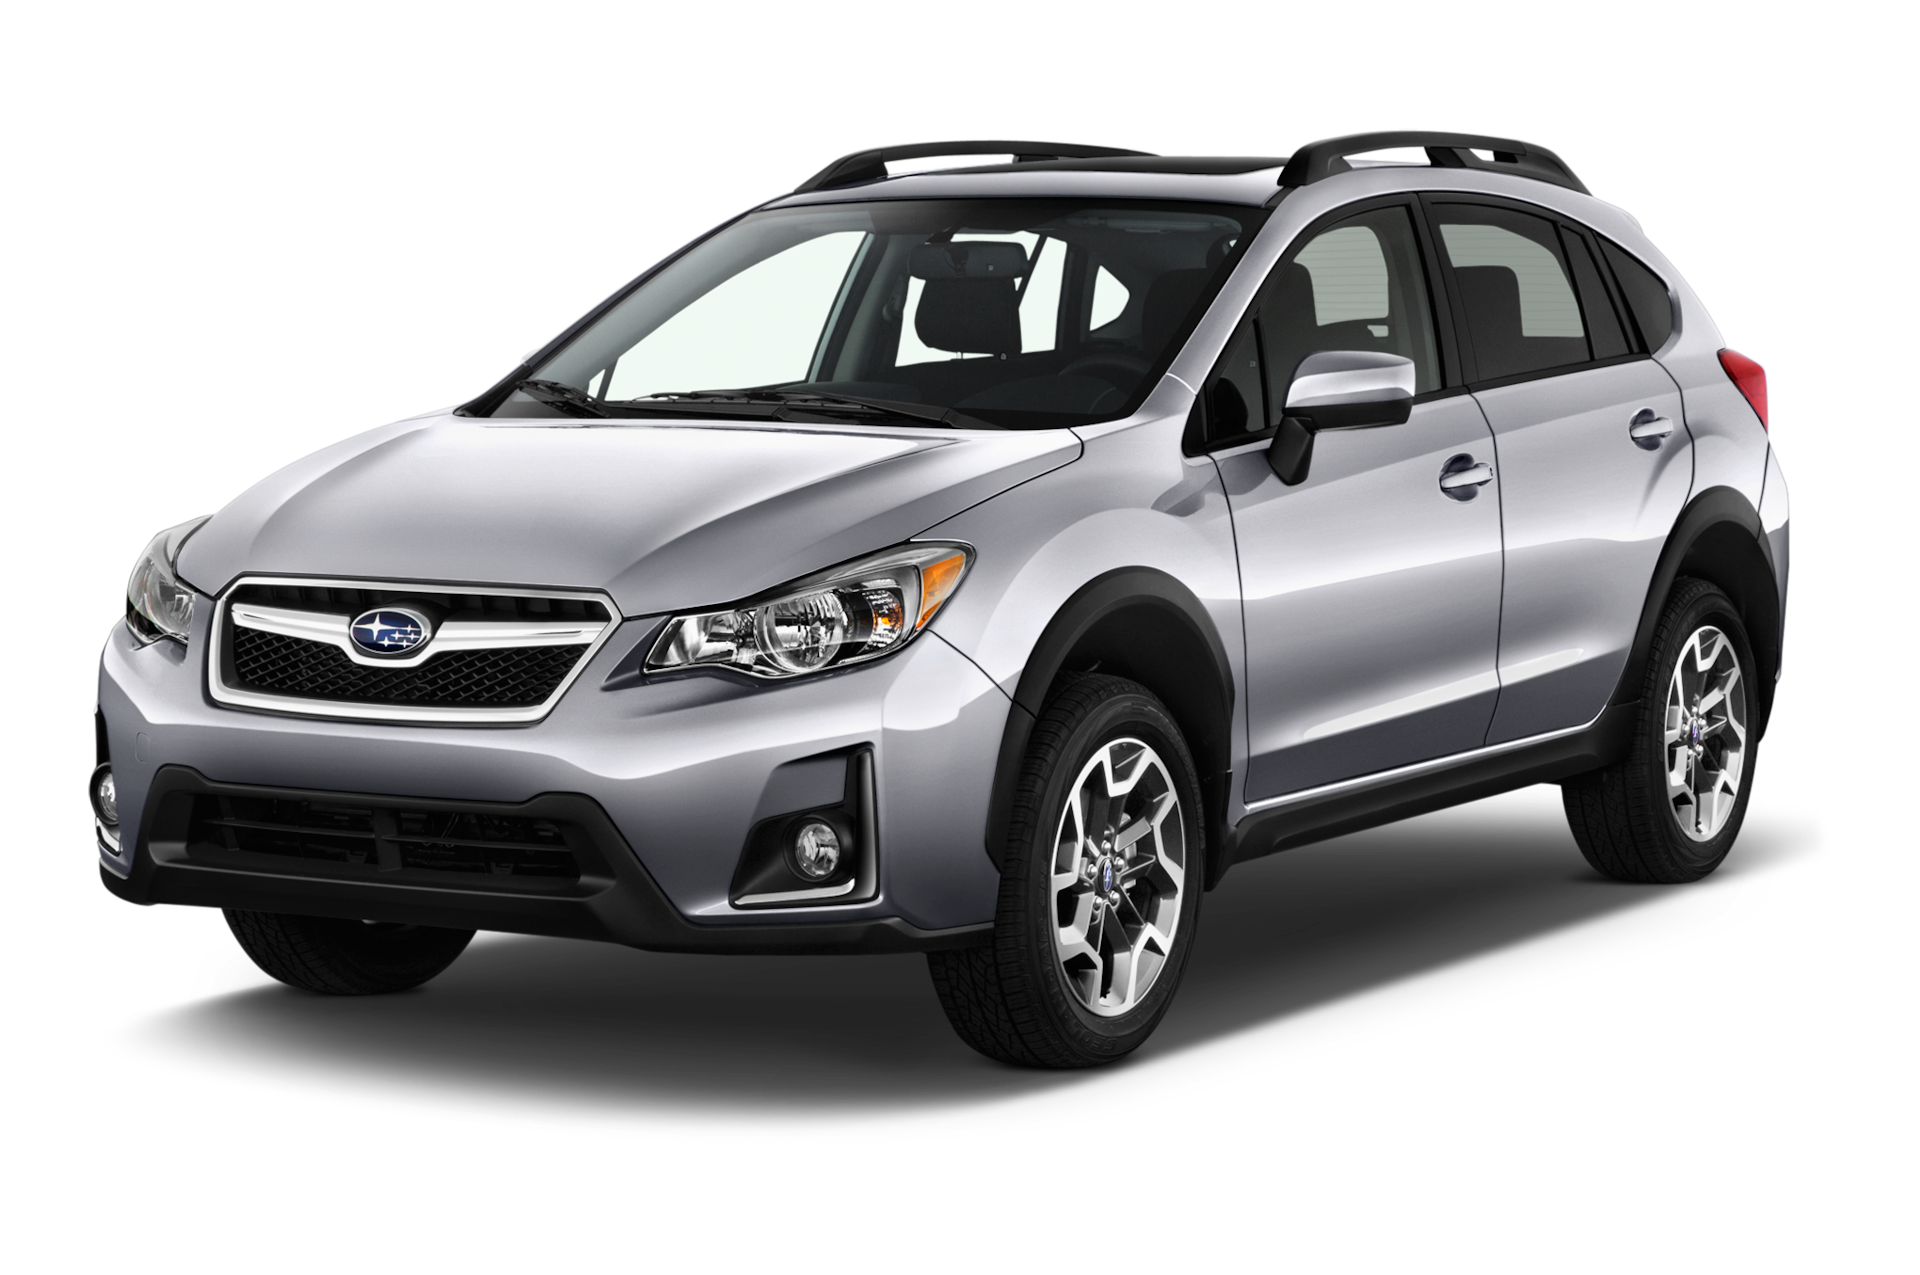 2017 Subaru XV Crosstrek Prices, Reviews, and Photos - MotorTrend